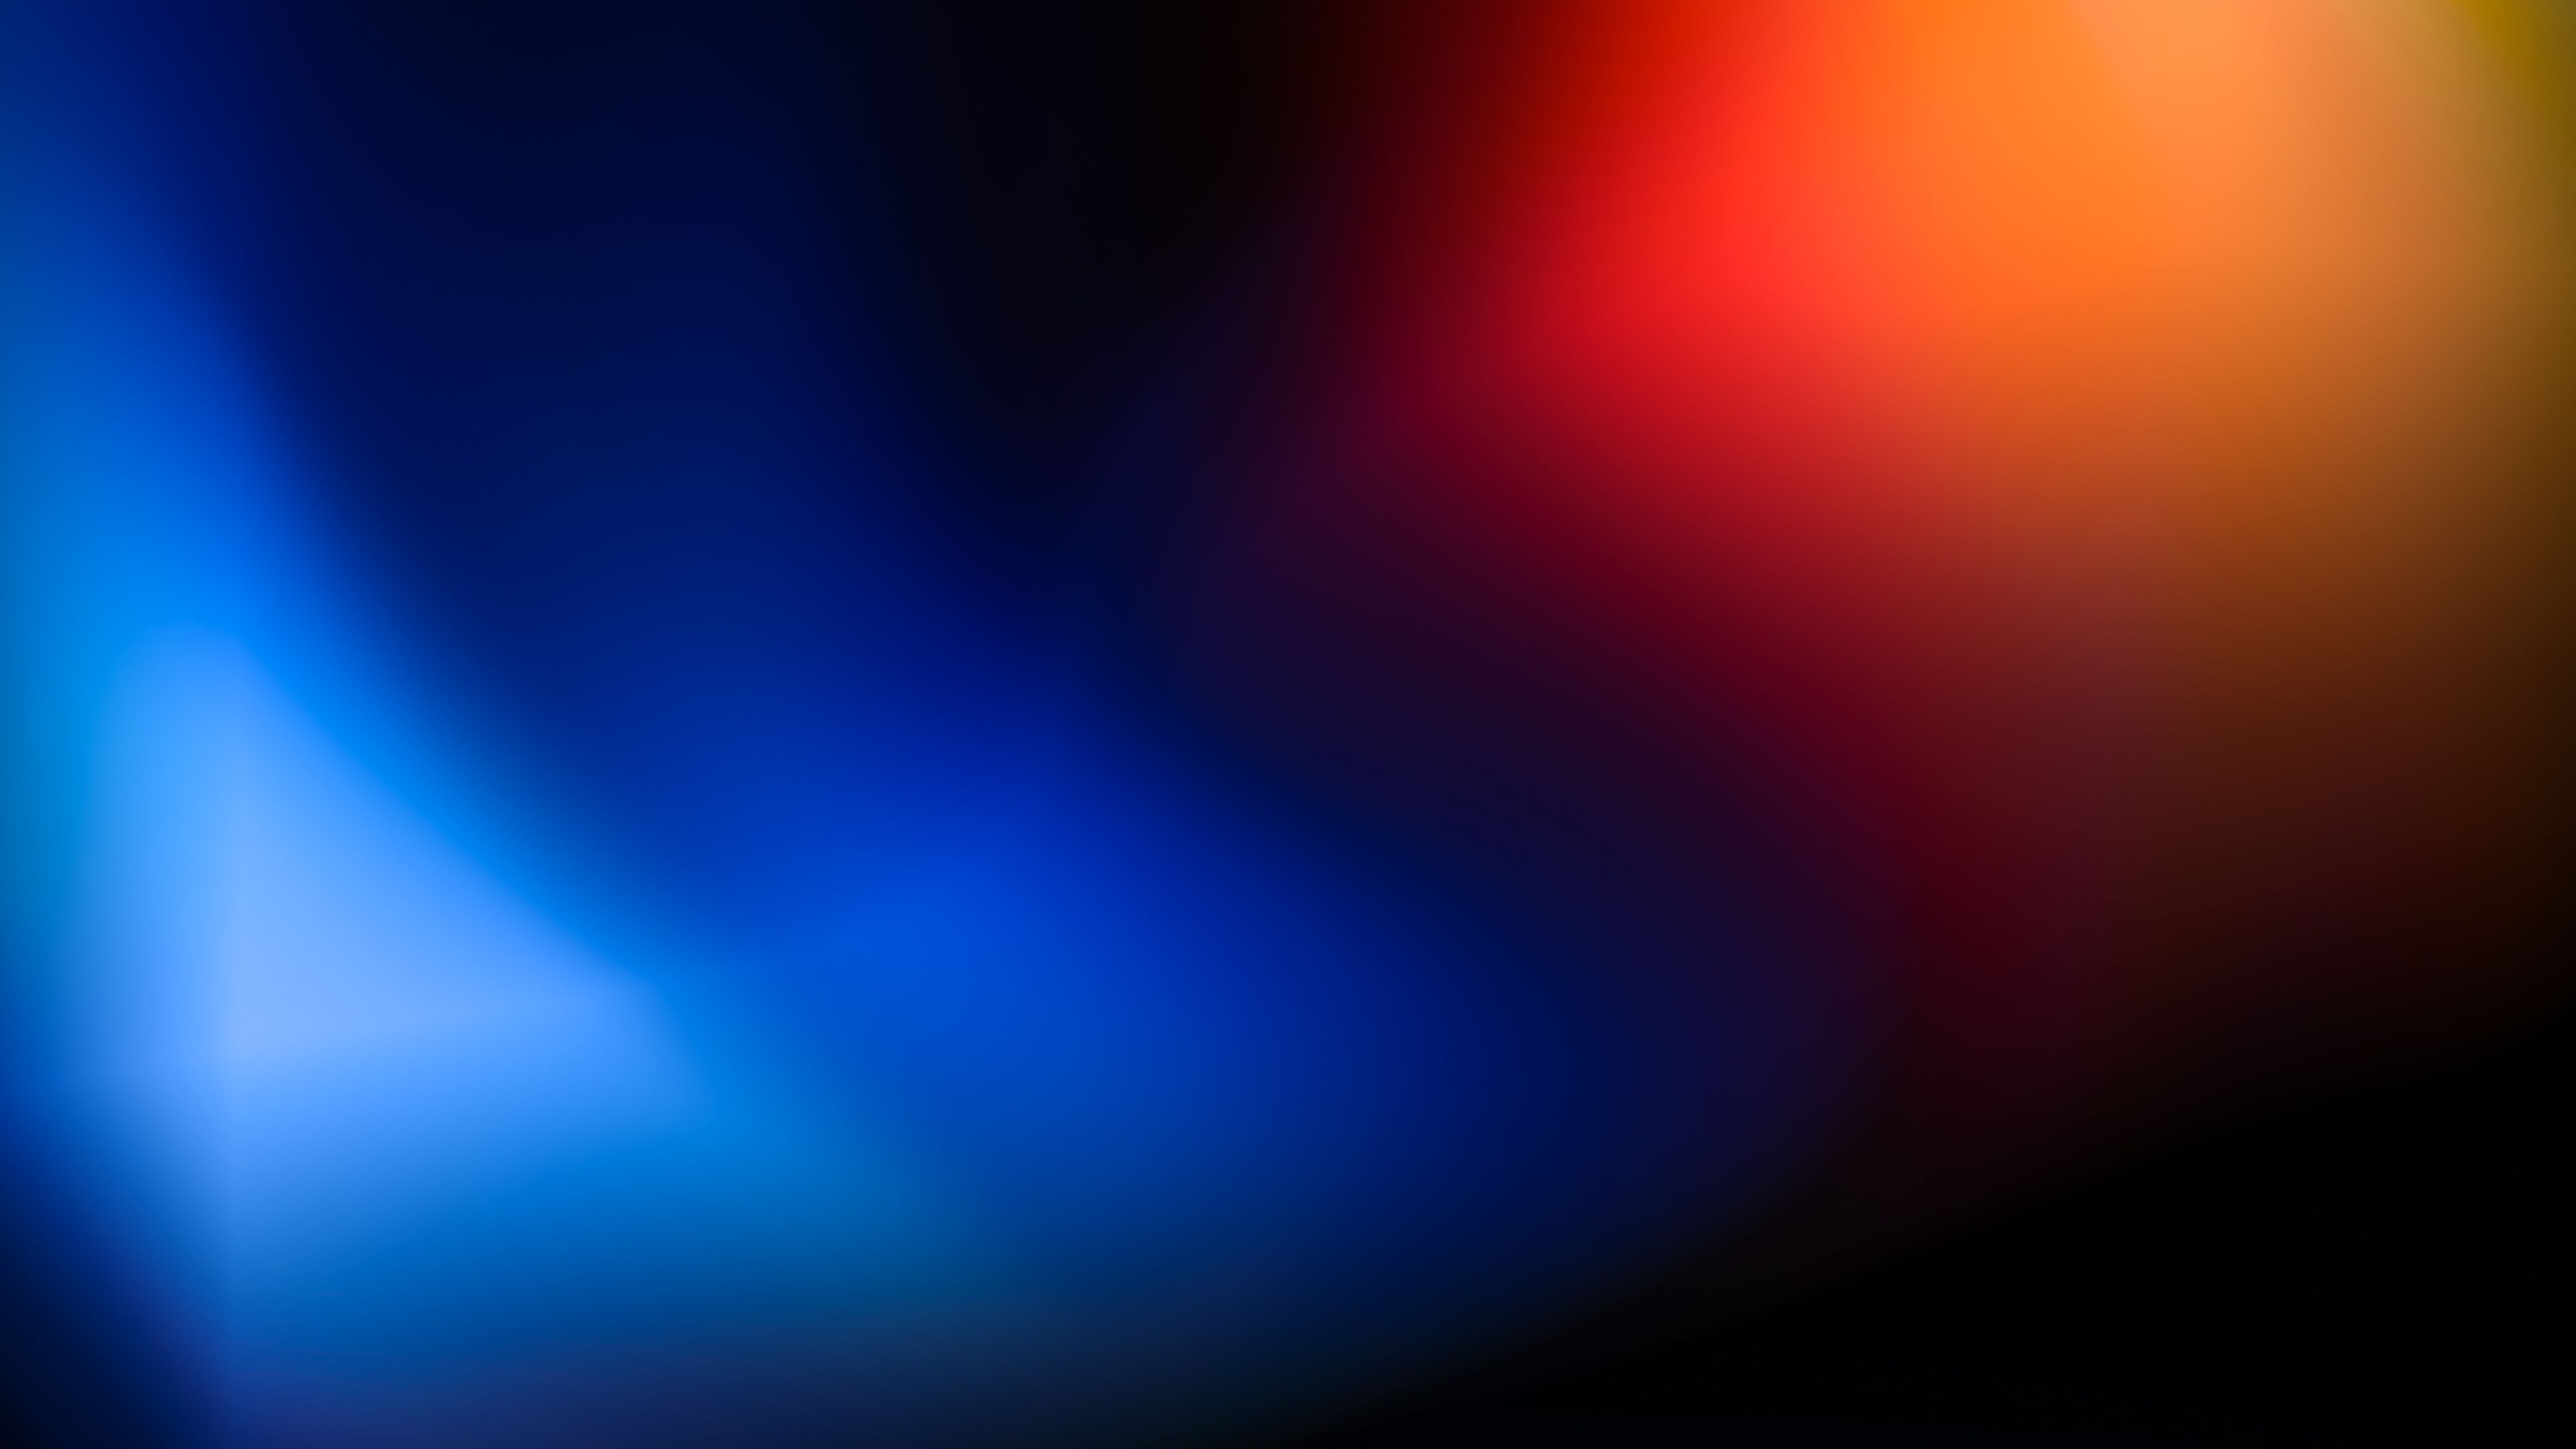 Với độ phân giải 4k, hình nền đỏ xanh sẽ khiến cho màn hình máy tính của bạn trở nên sống động và rực rỡ hơn bao giờ hết. Với sự kết hợp độc đáo giữa màu đỏ và xanh, hình nền sẽ tạo nên một không gian làm việc đầy sinh động.